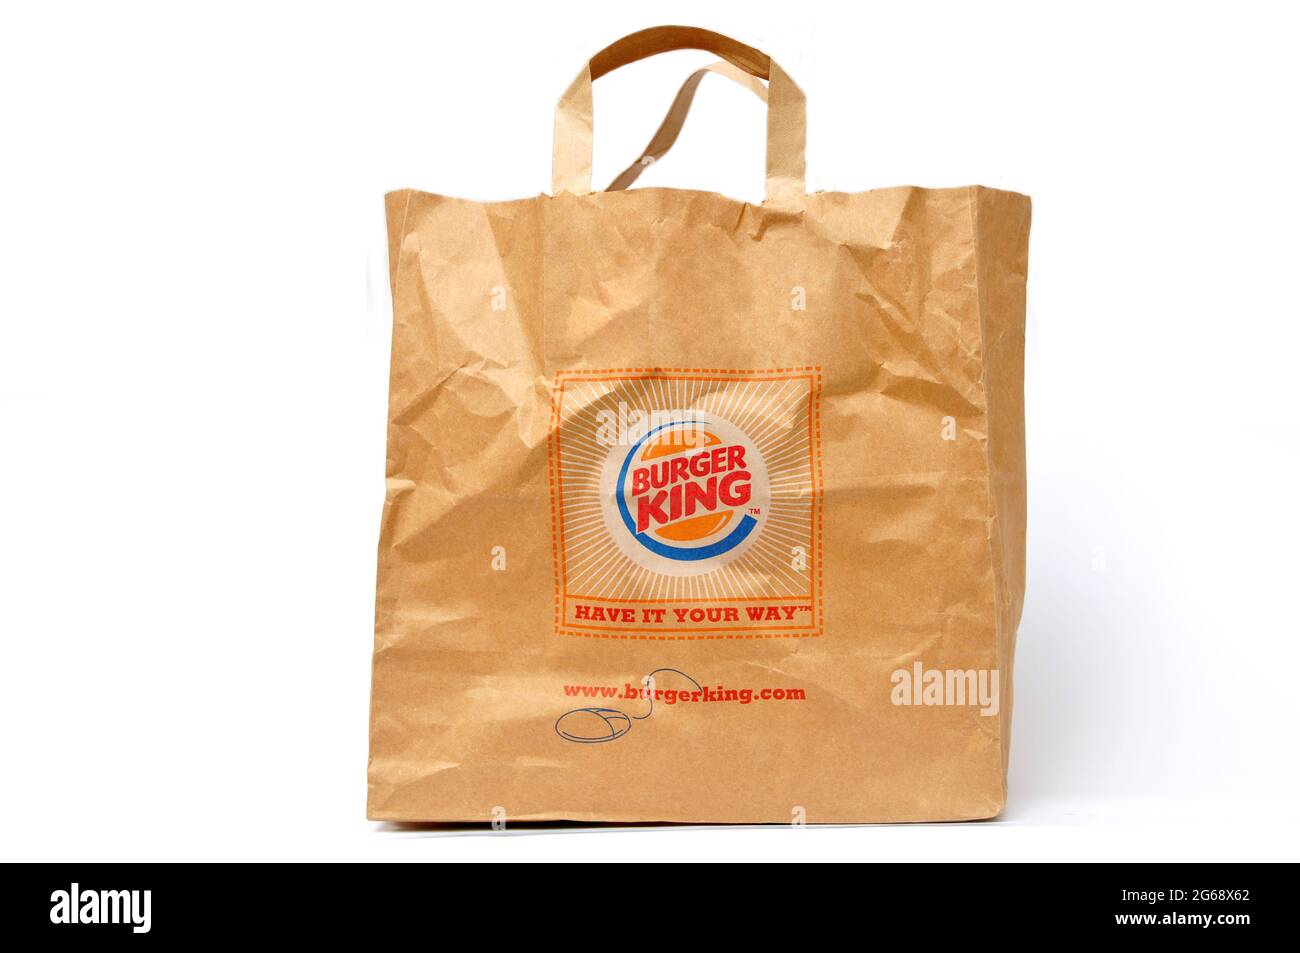 Bolsas de papel utilizadas en restaurantes Burger King en Turquía, bolsa de  papel reciclable Burger King, producto natural, aisladas sobre fondo  blanco, Estambul Turquía Fotografía de stock - Alamy